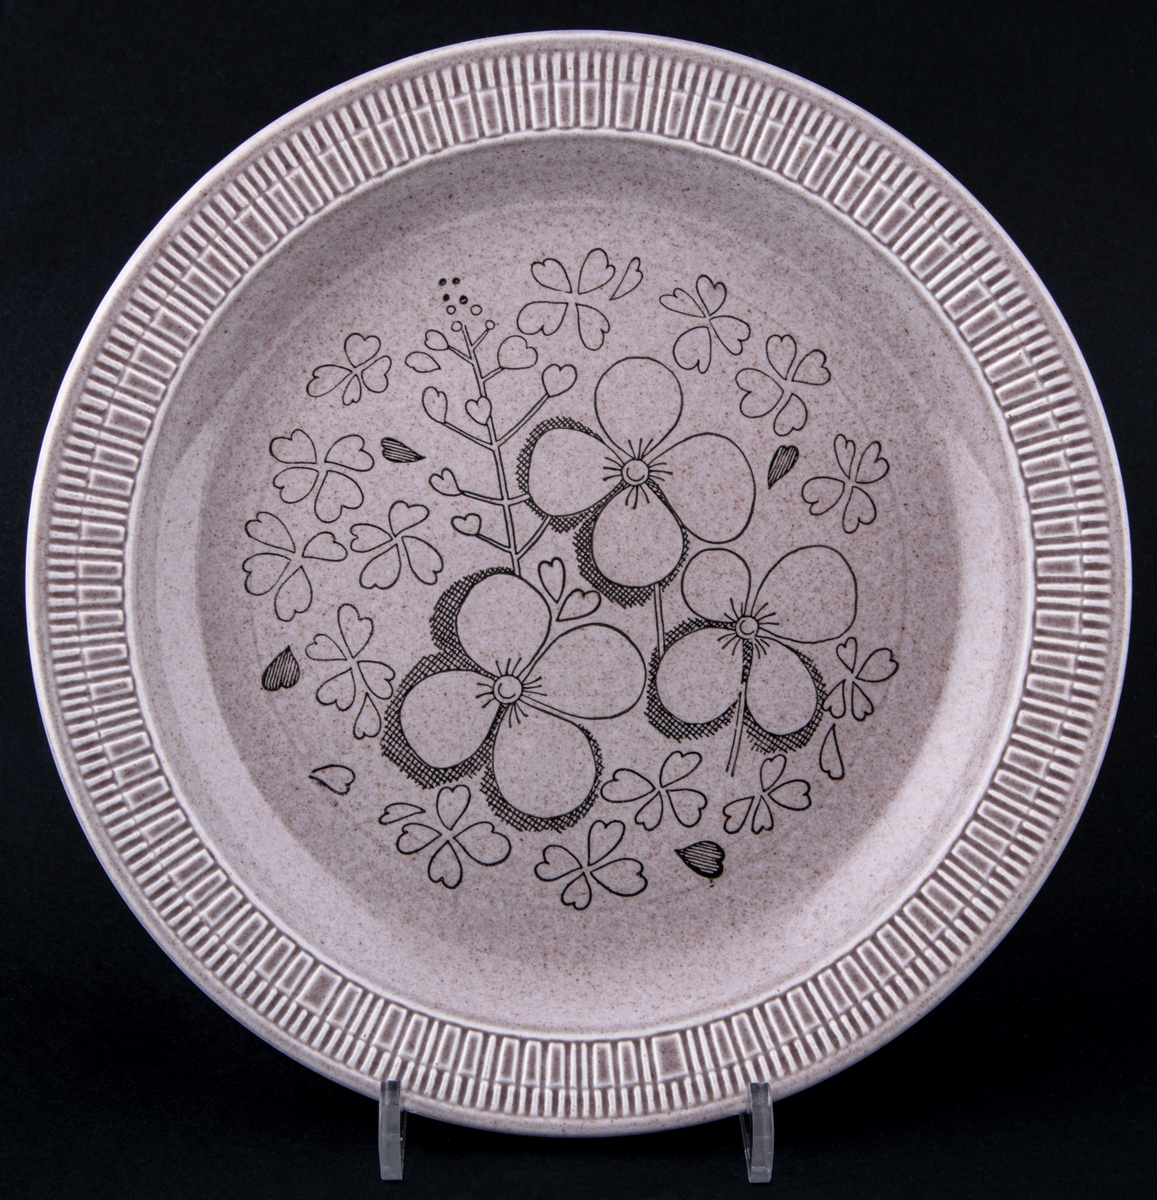 Flat tallrik från Gefle Porslin med provdekor, modell ER av Berit Ternell (skapad 1966). Ljusbrun glasyr med svarta blommor i stämpeltryck på tallrikens spegel.